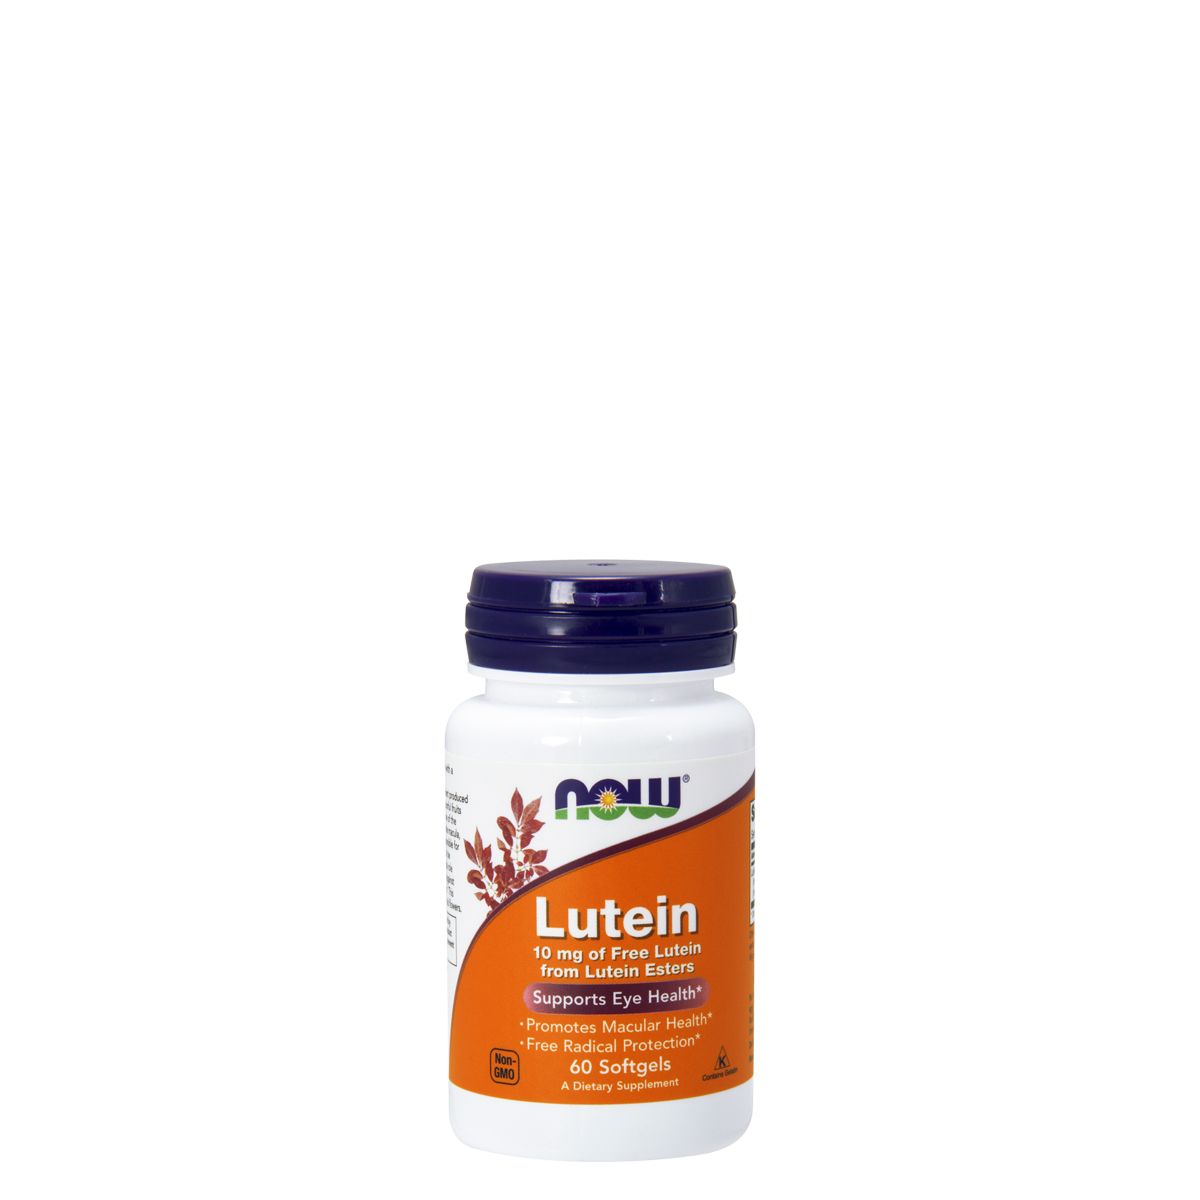 Lutein 10 mg lutein észterből, Now Free Lutein from Lutein Esters, 60 kapszula